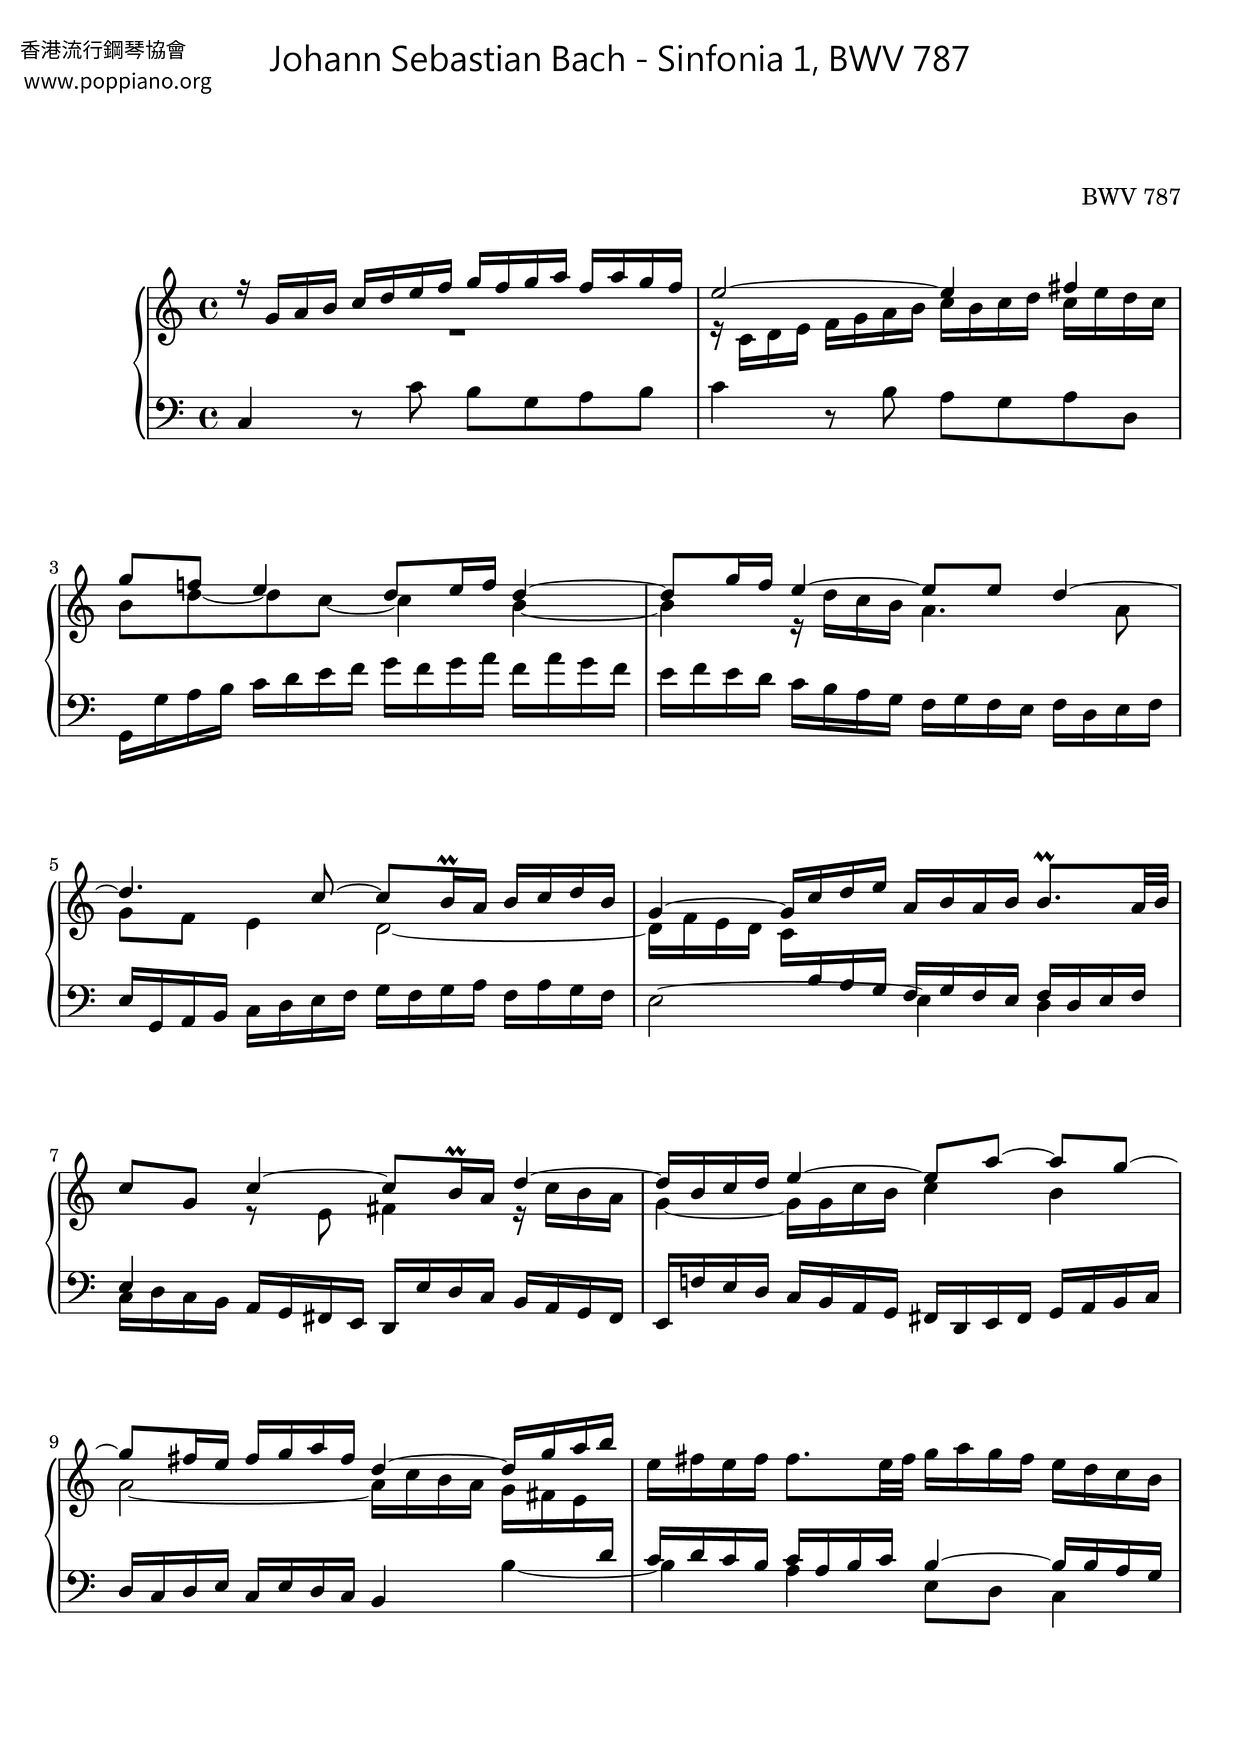 Sinfonia 1, BWV 787ピアノ譜